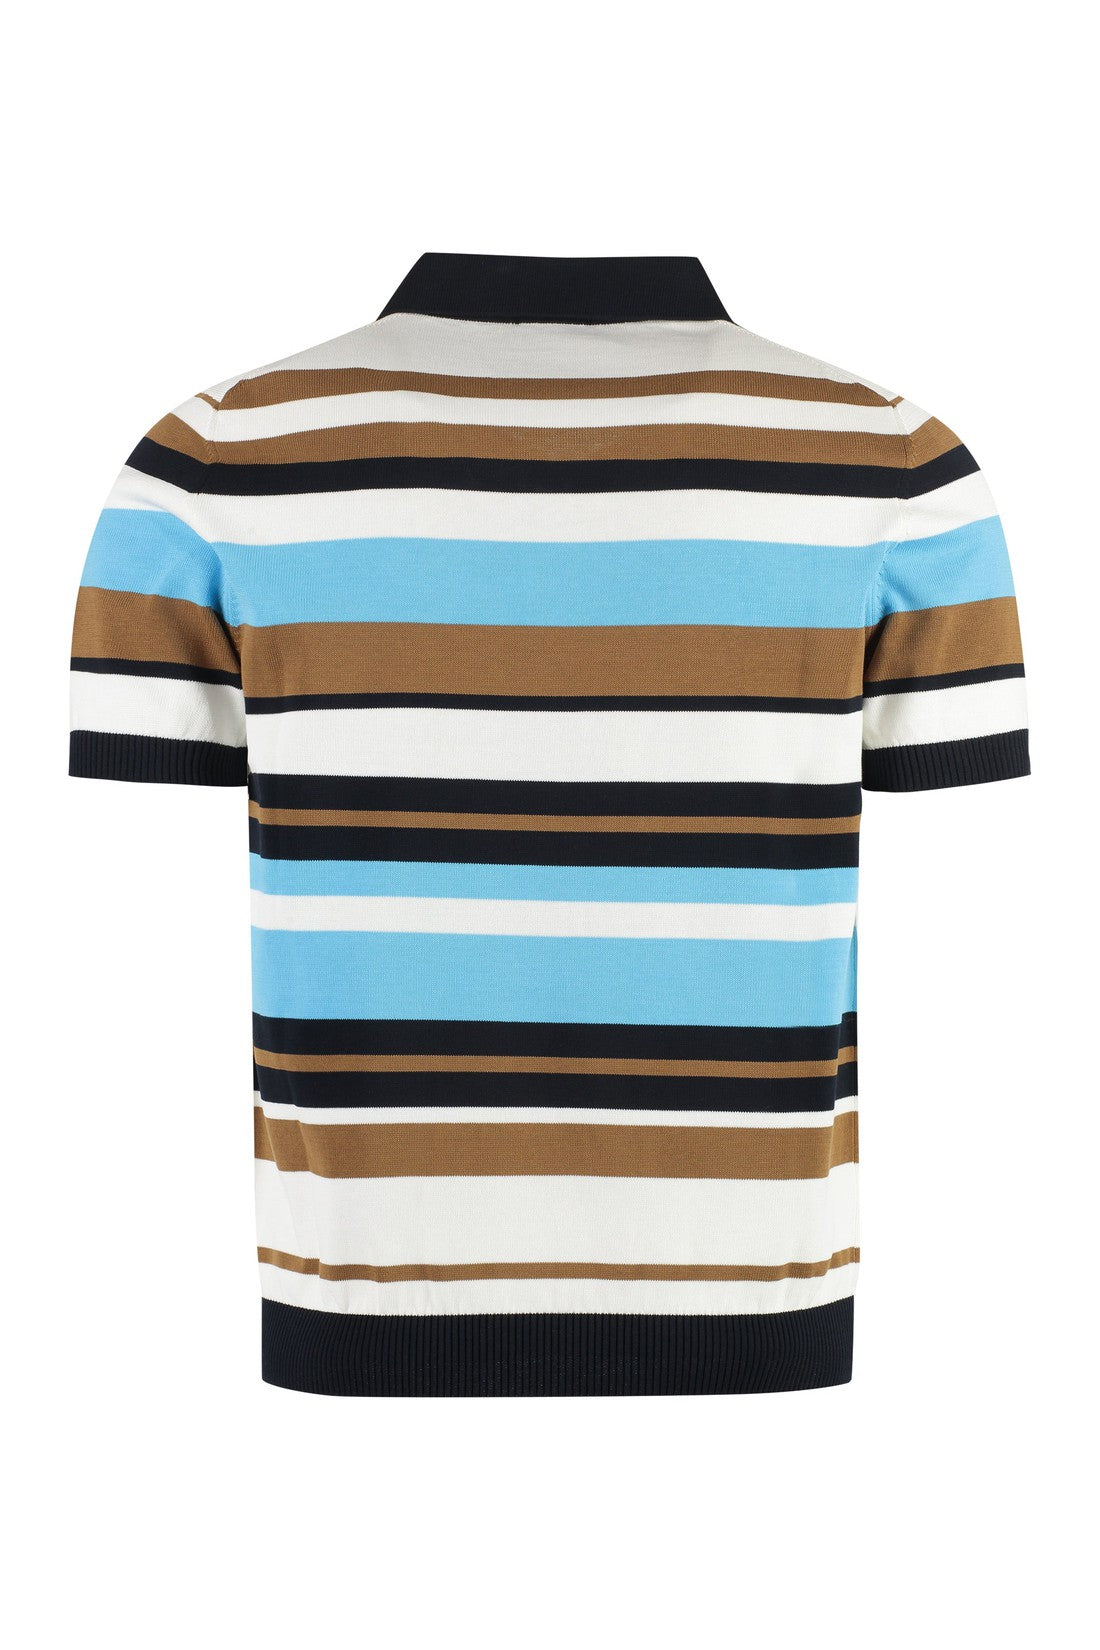 Piralo-OUTLET-SALE-Short sleeve cotton polo shirt-ARCHIVIST